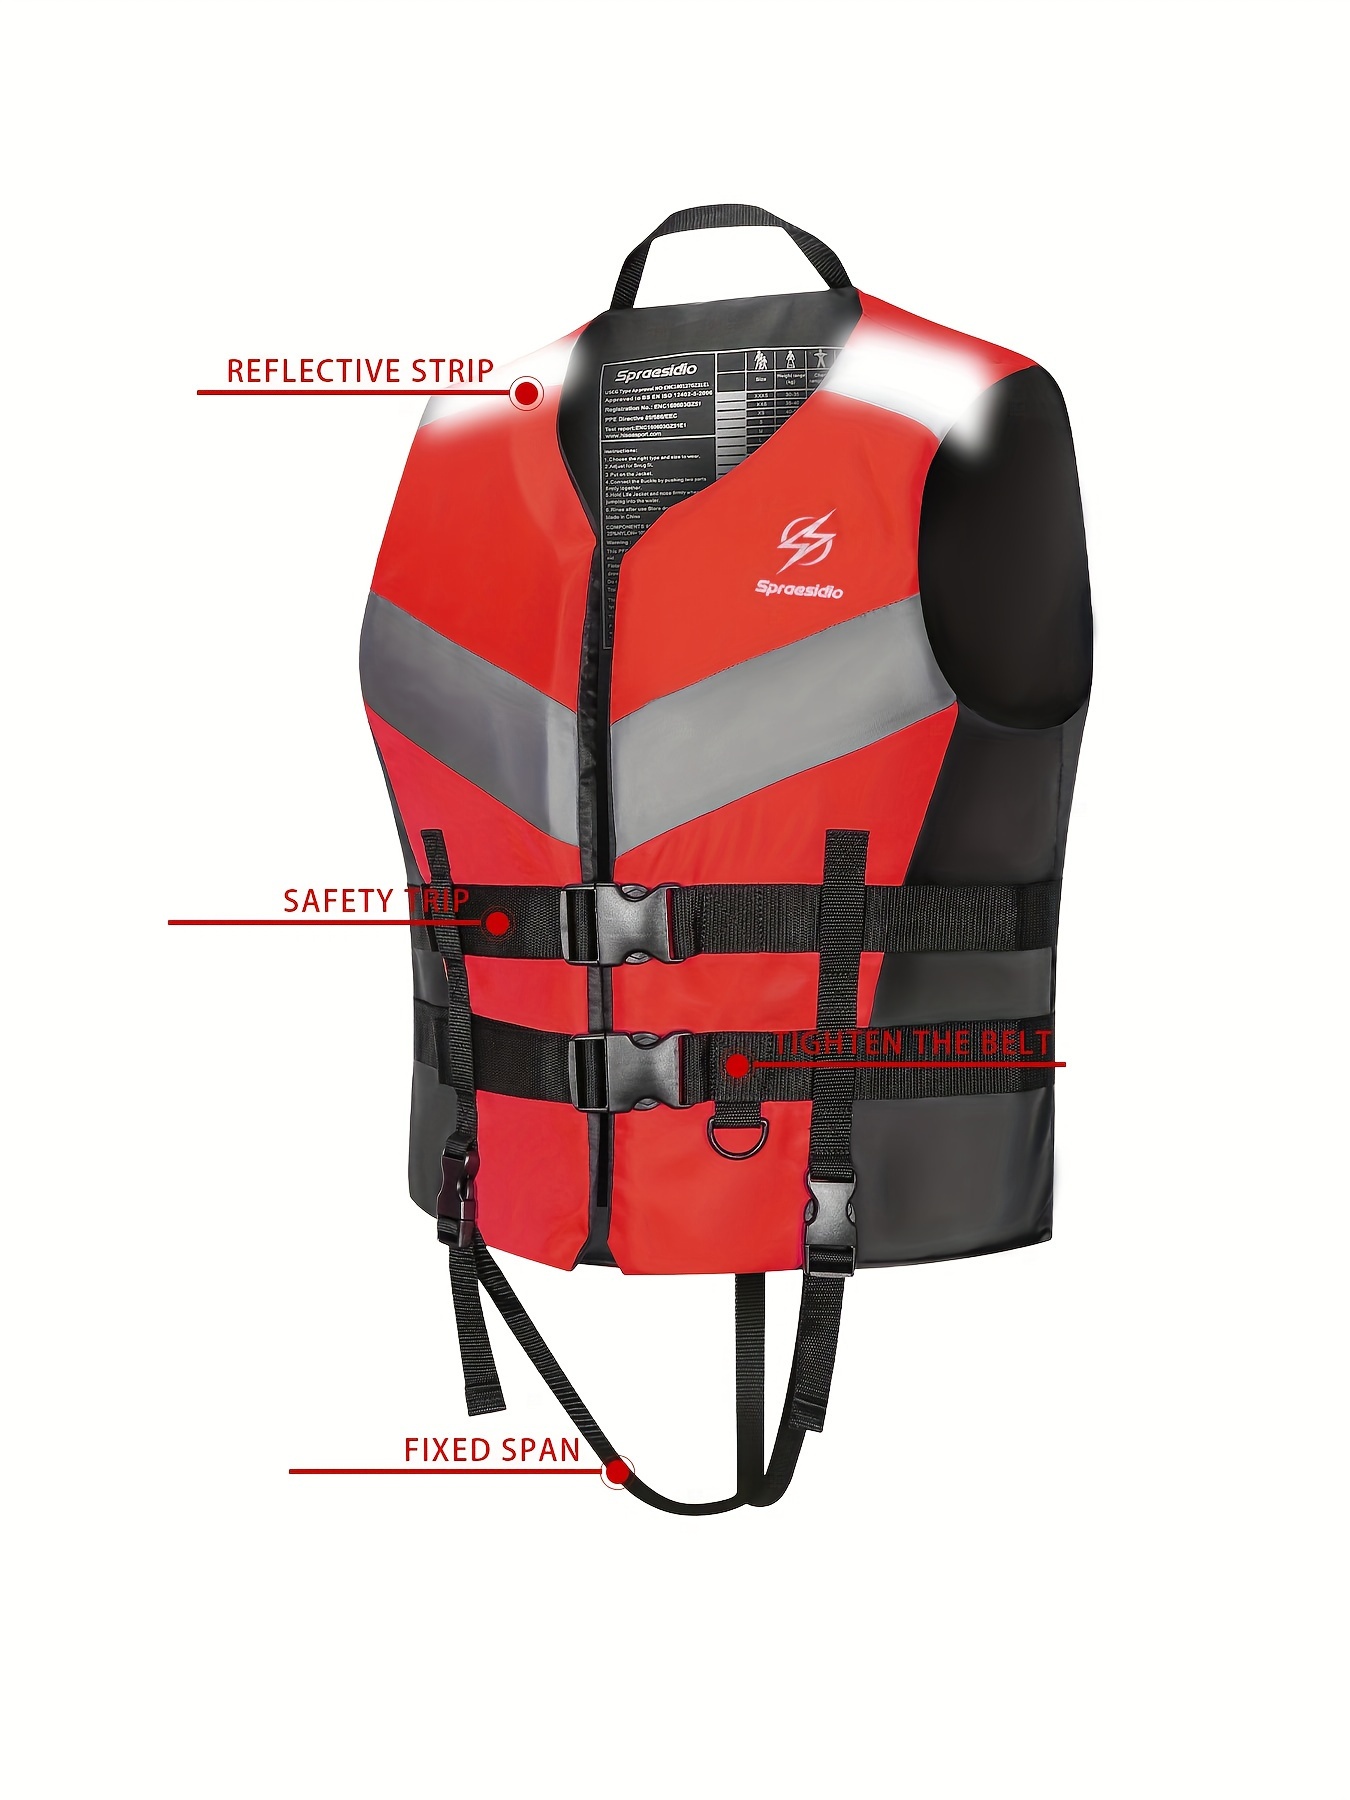 Adult Life Jacket Warm Neoprene Buoyancy Vest Outdoor Accessories (XXL Red)